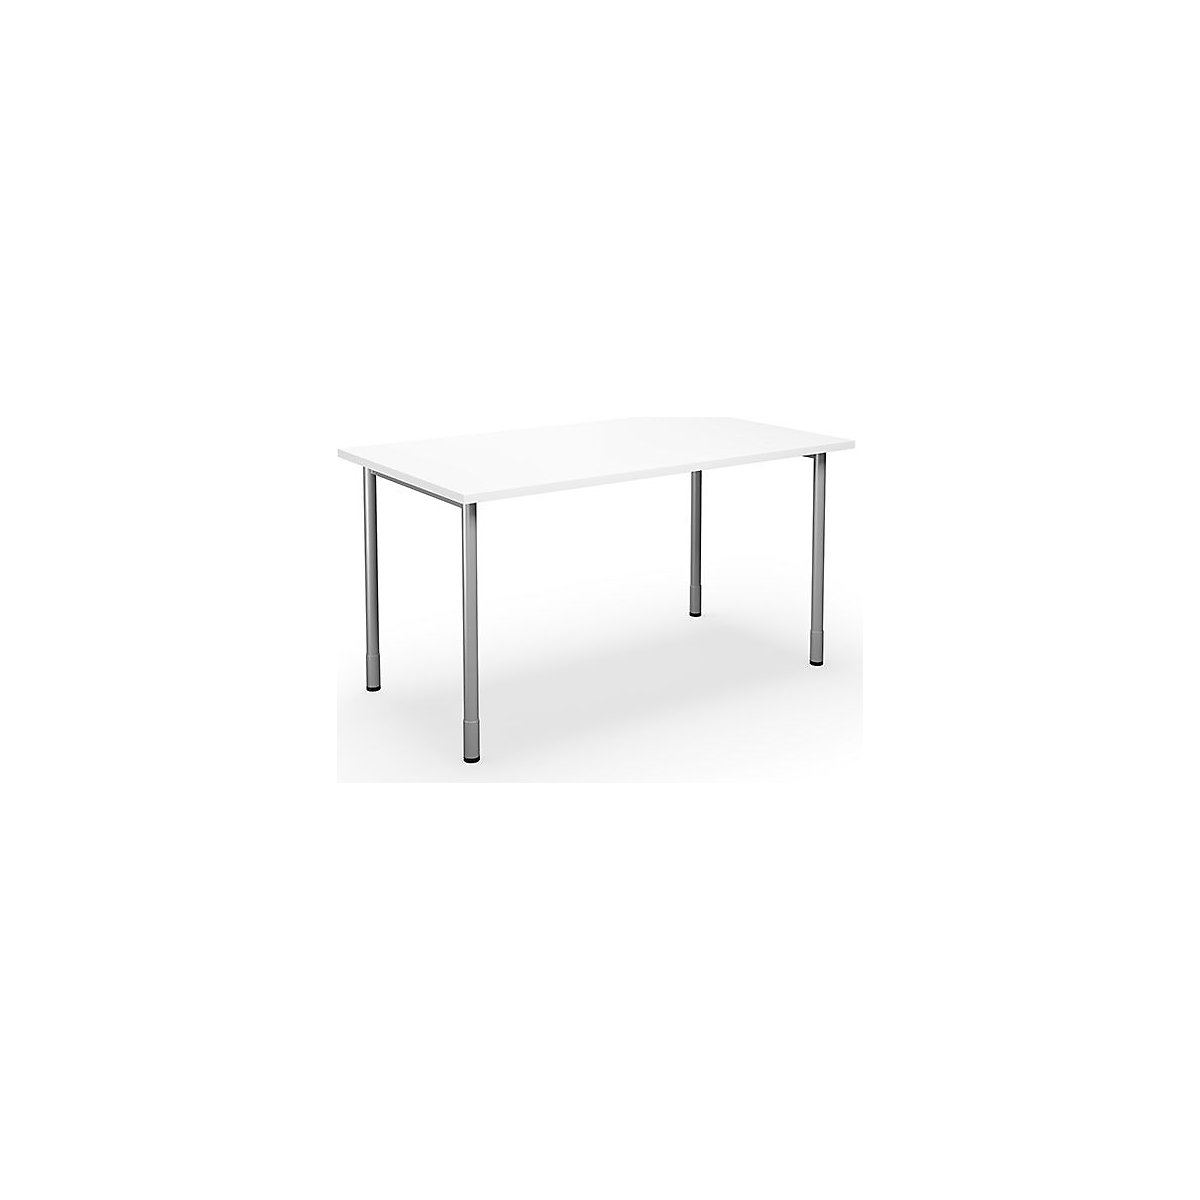 DUO-C multi-purpose desk, straight tabletop, WxD 1400 x 800 mm, white, silver-2